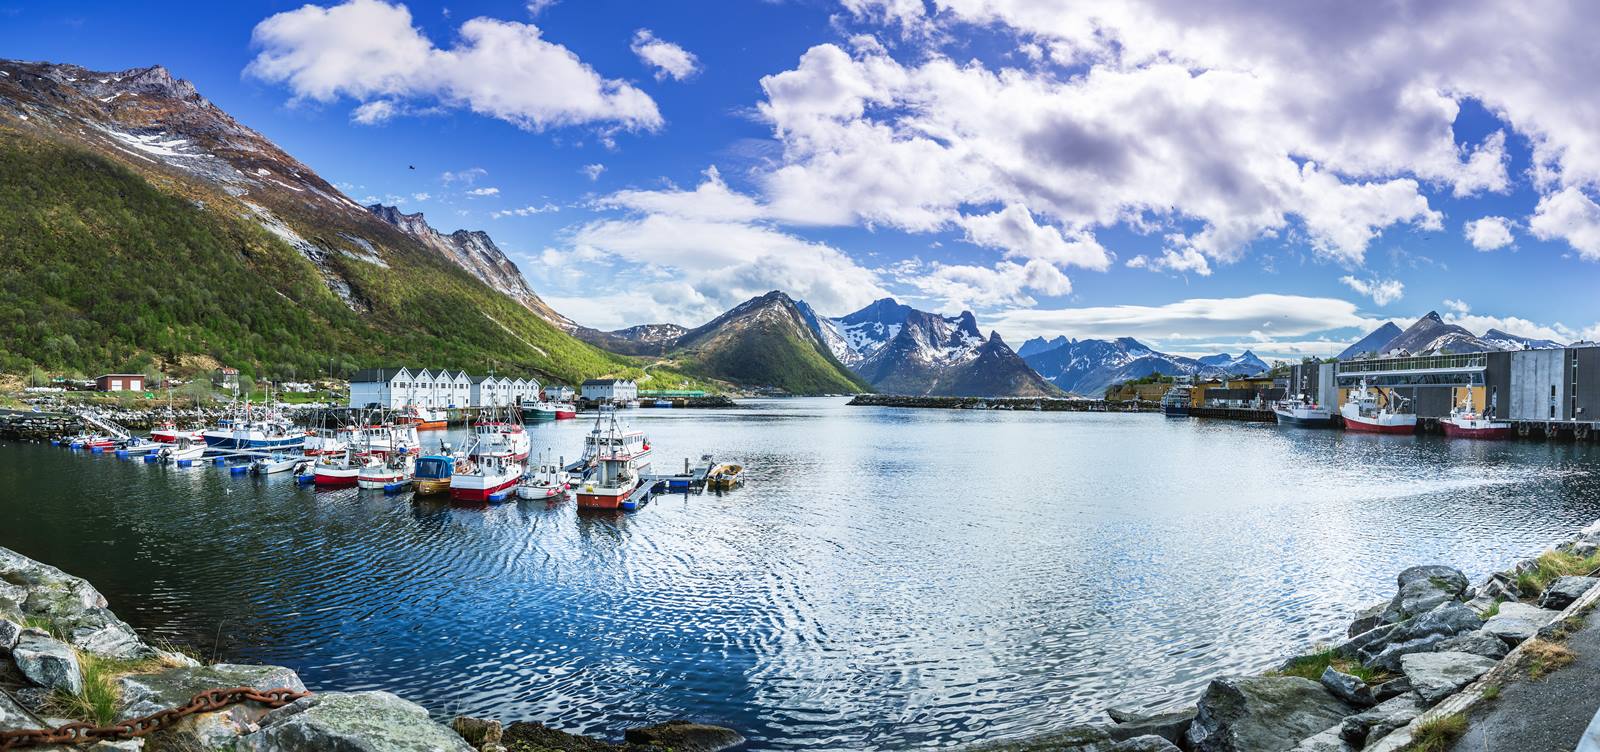 ทัวร์ยุโรป : NORWAY LOFOTEN – SENJA 10 วัน (TG)